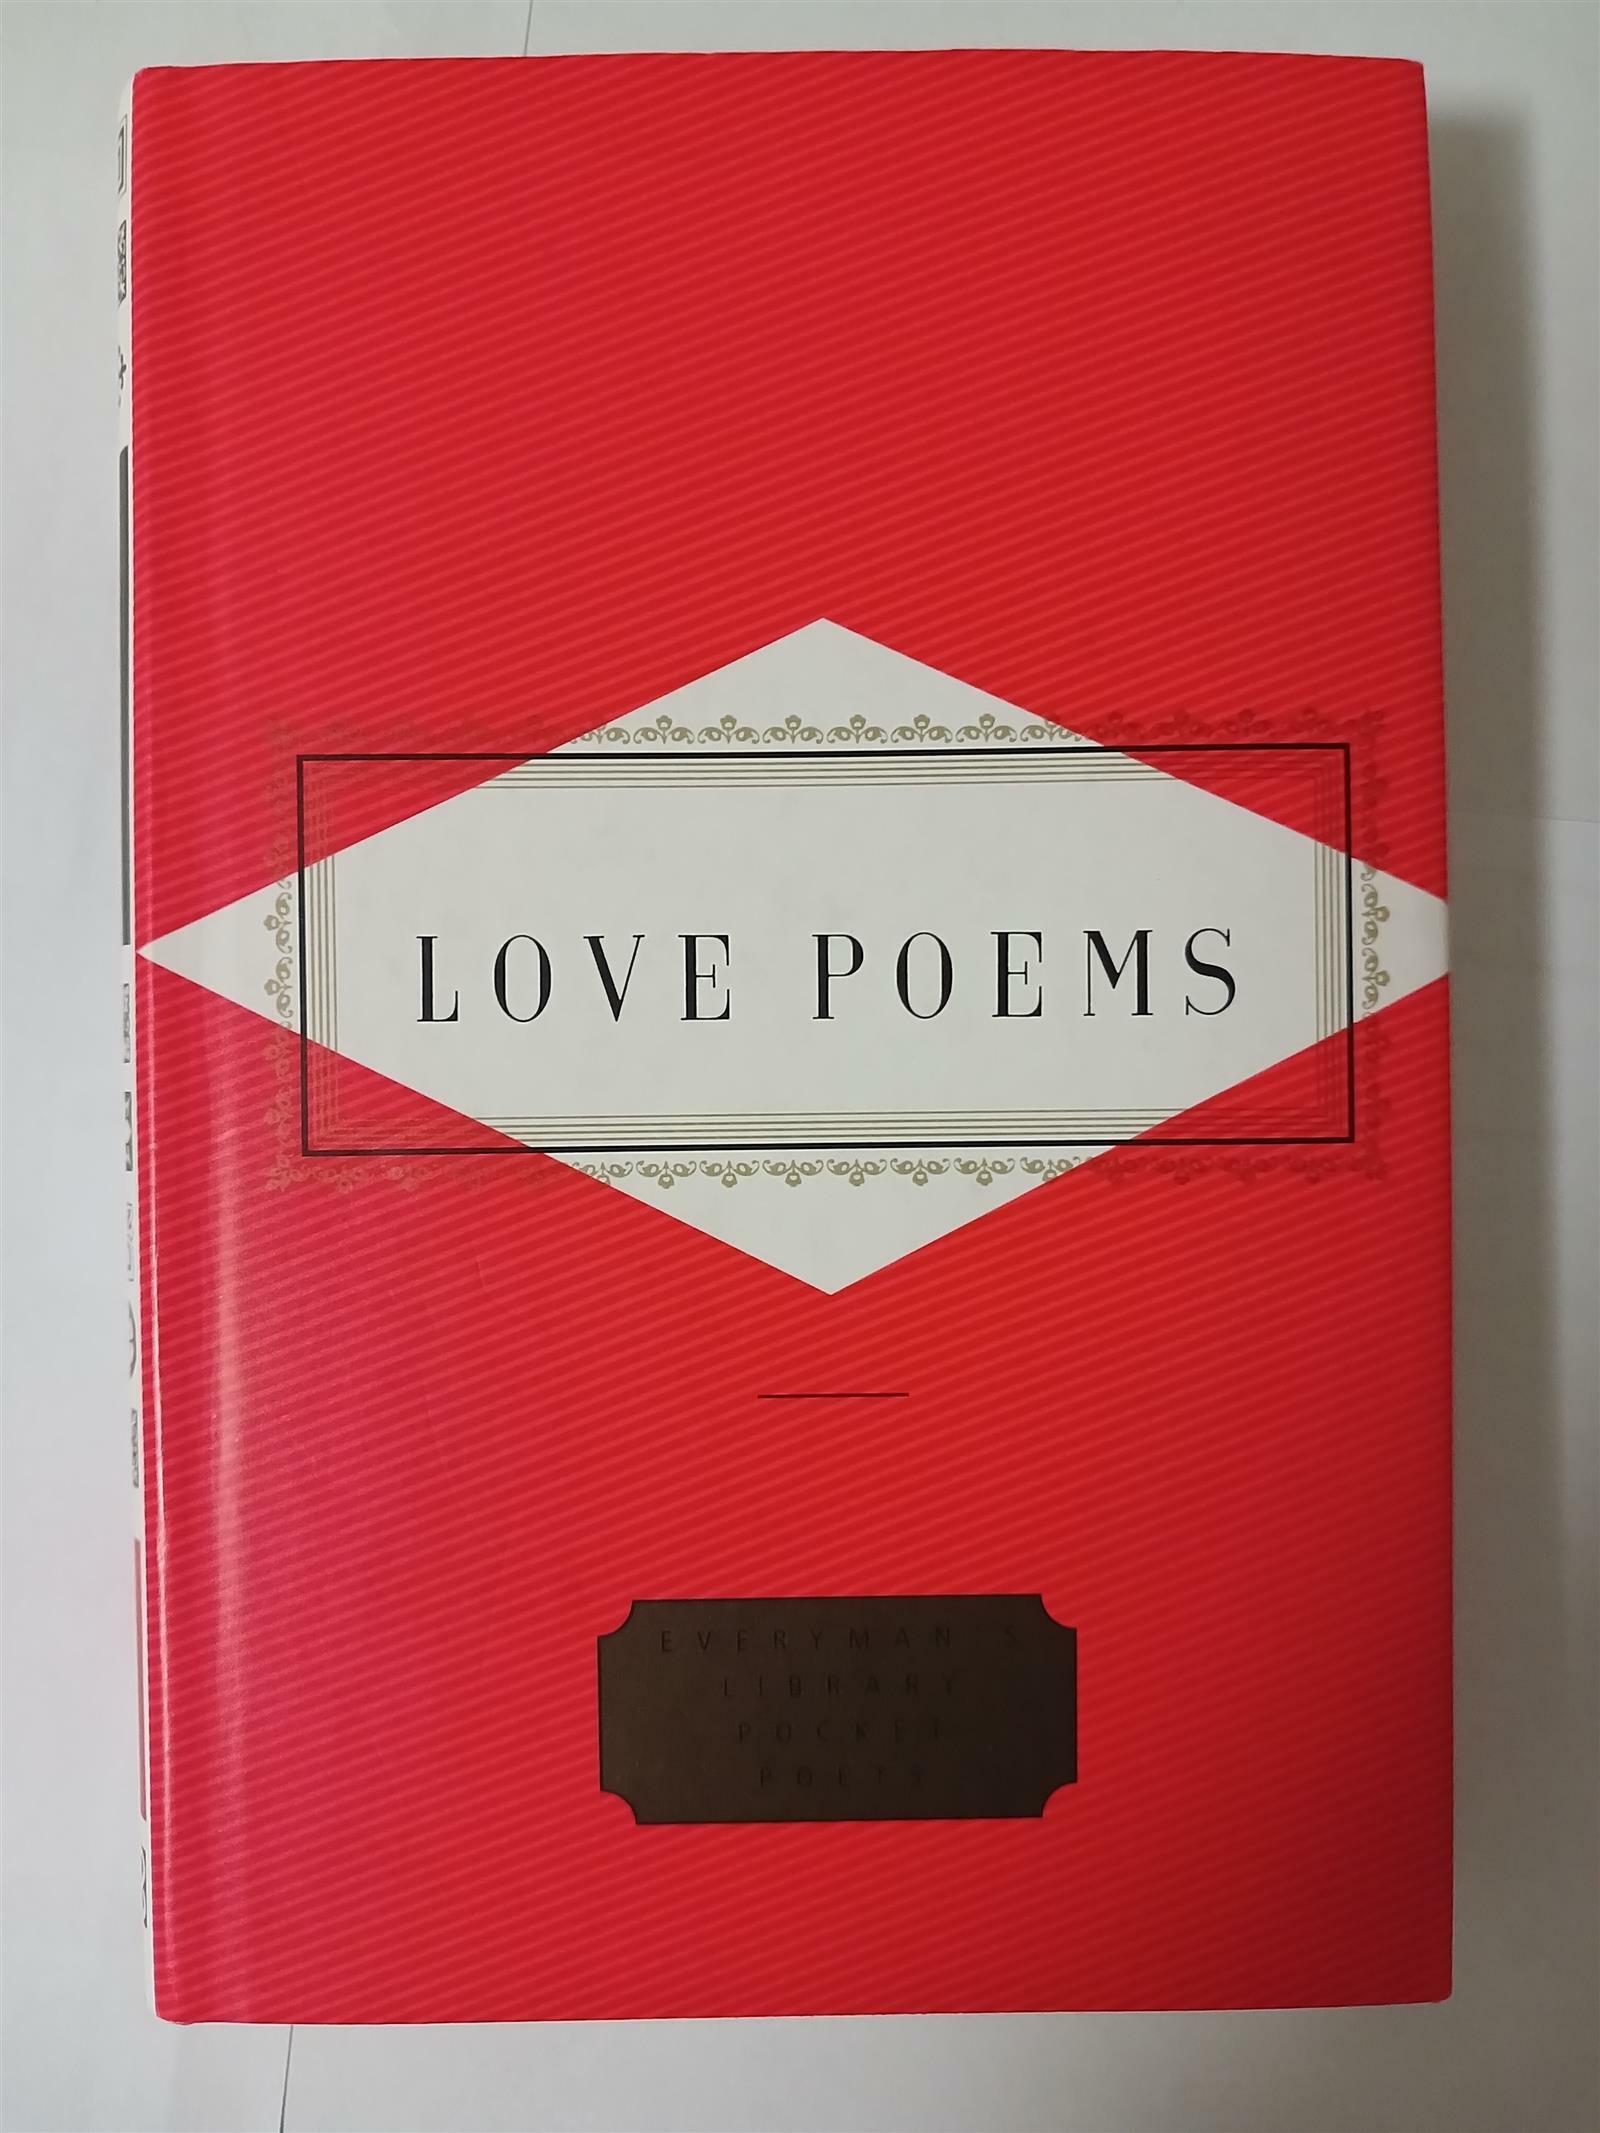 [중고] LOVE POEMS, Peter Washington, 1993년 초판, Everyman‘s Library, Hardcover (Hardcover)